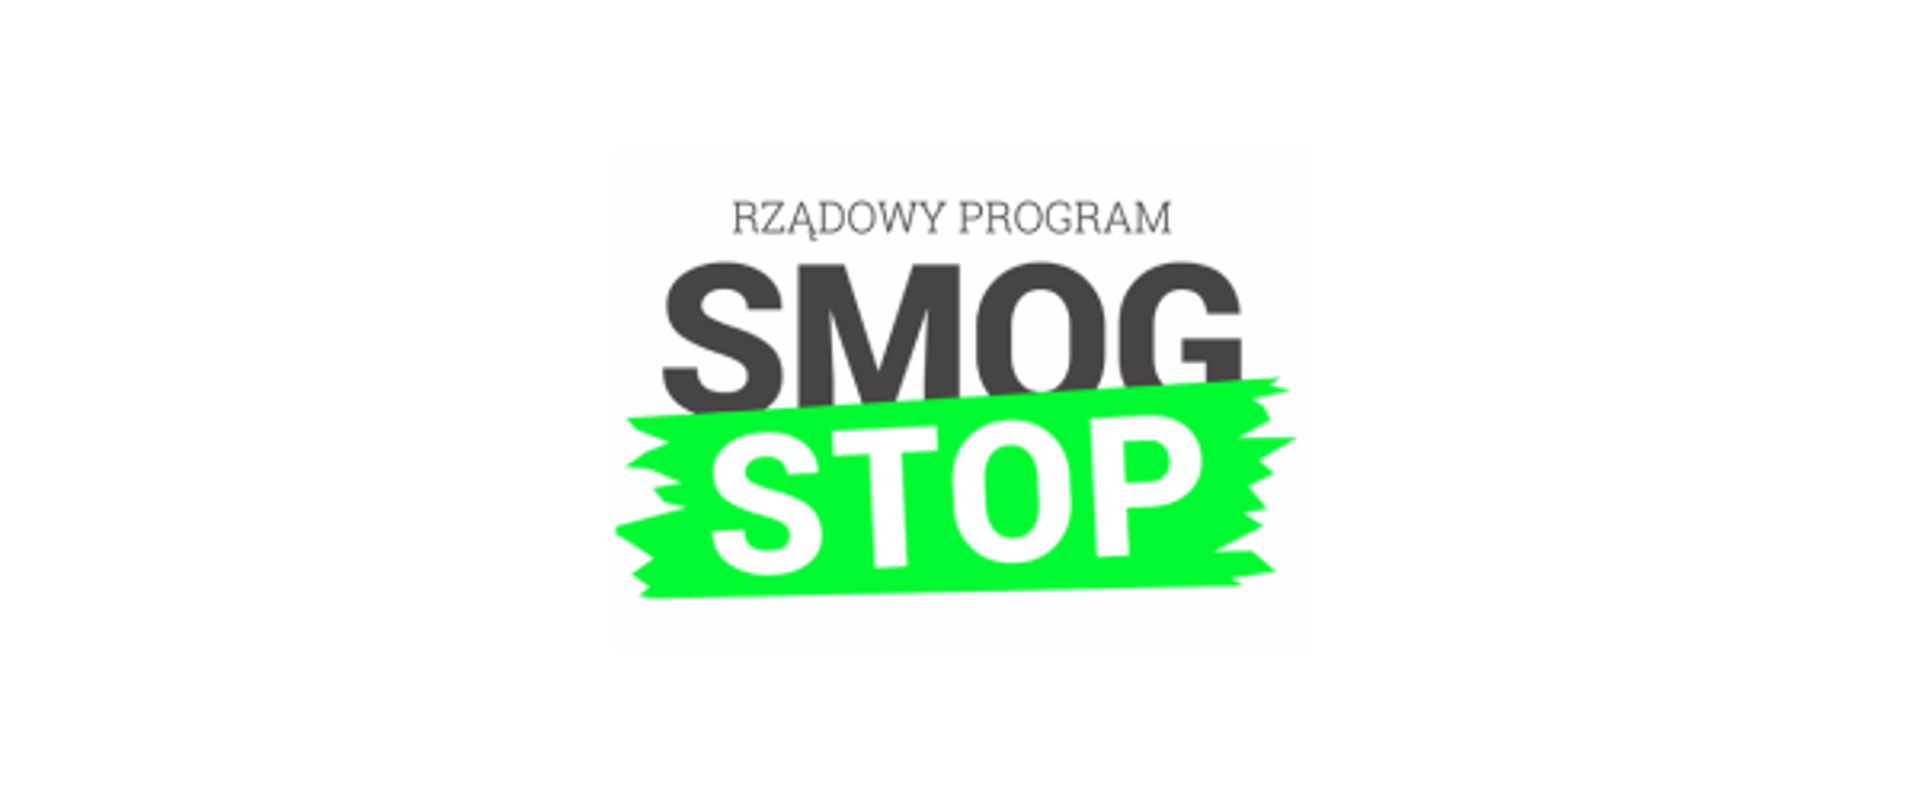 Logo programu Stop Smog - czarny napis Rządowy Program Smog, poniżej białe słowo stop na zielonym tle